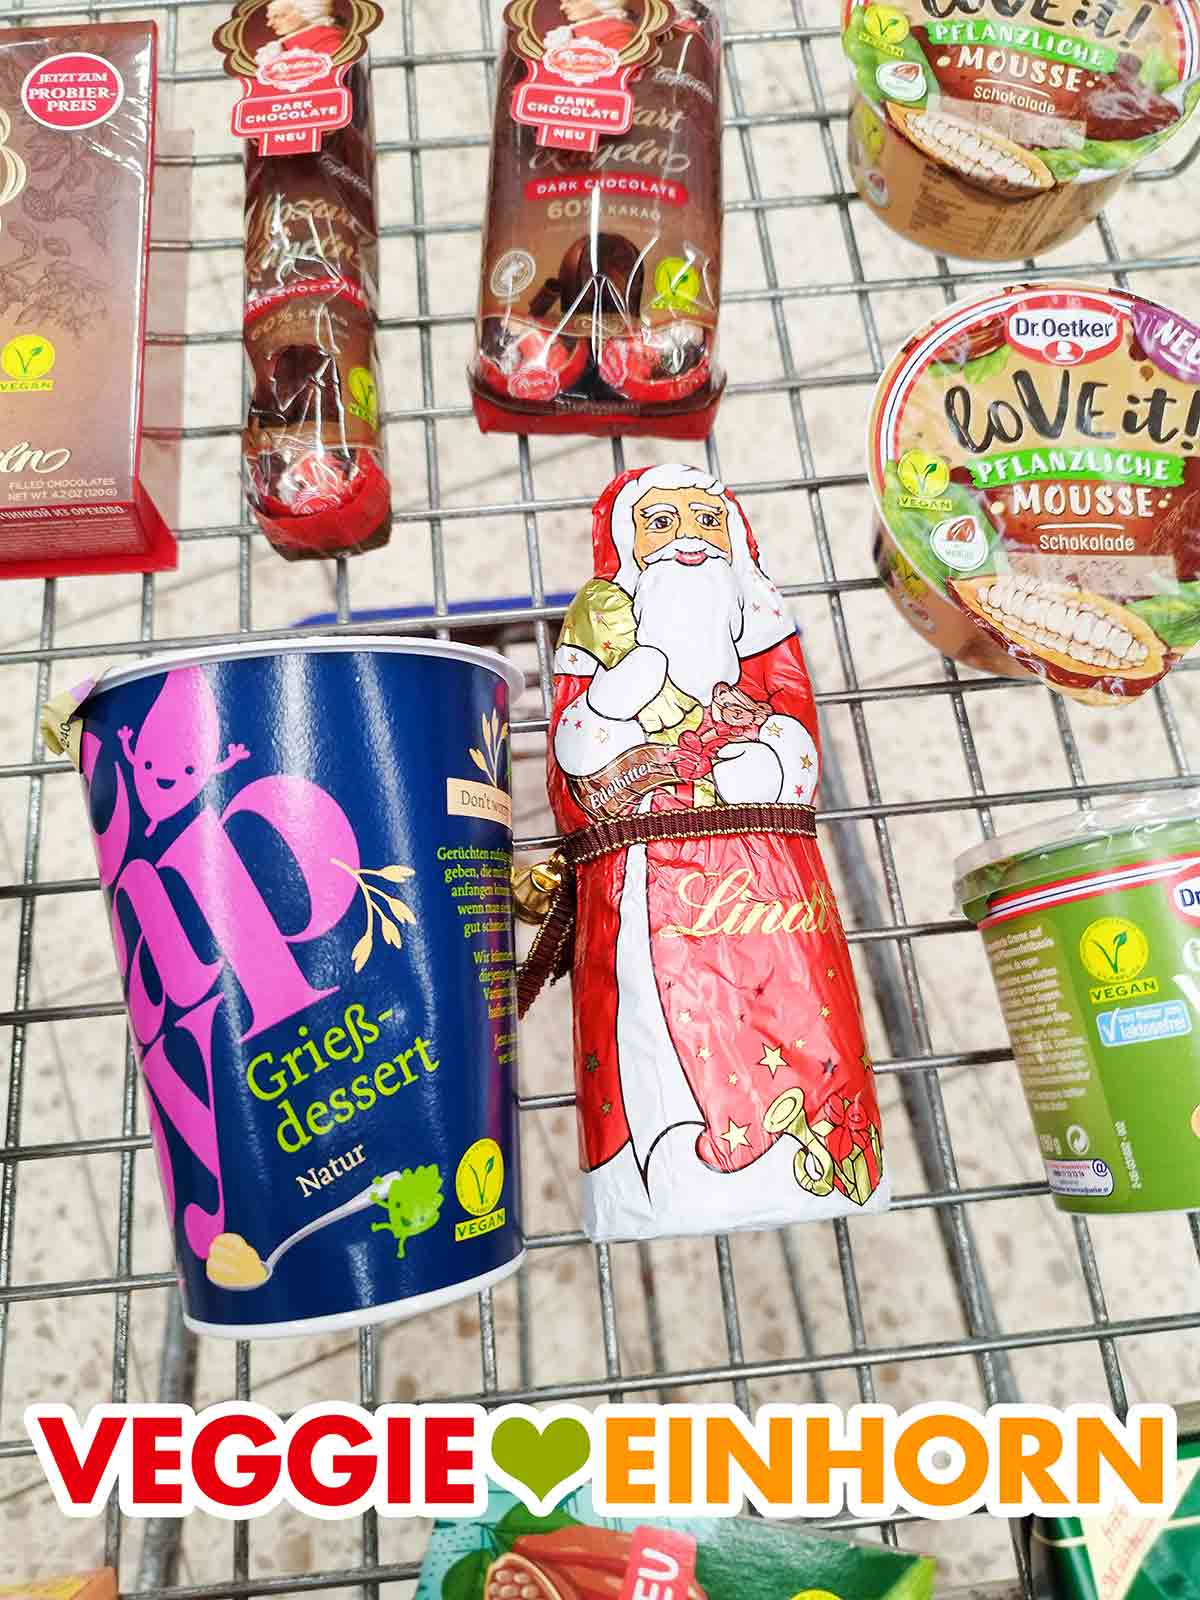 Lindt Edelbitter Weihnachtsmann im Einkaufswagen mit anderen veganen Lebensmitteln